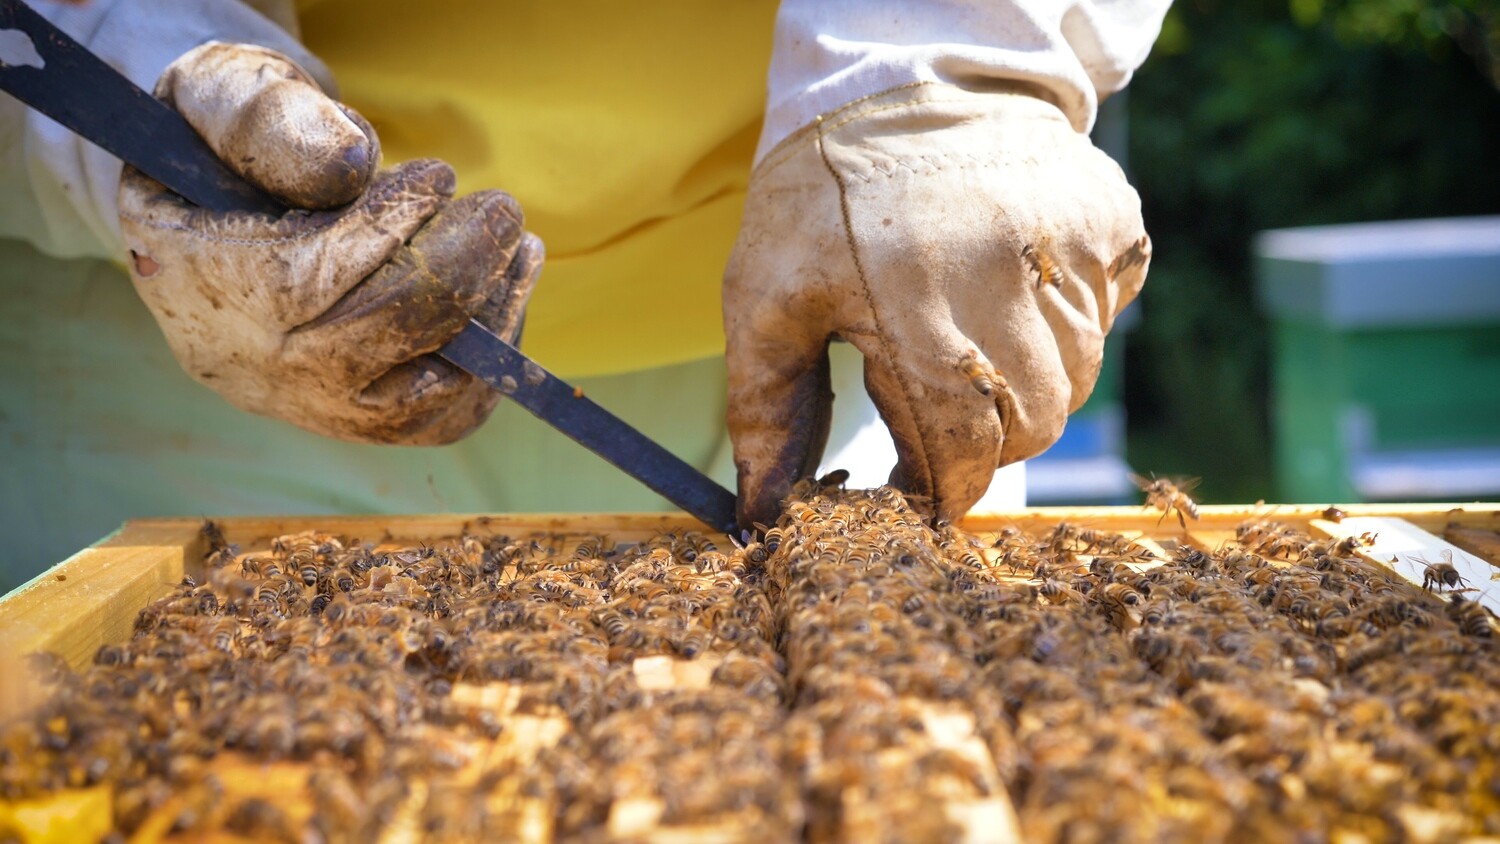 Formation en apiculture niveau débutant samedi 17 juillet 2021 10h00